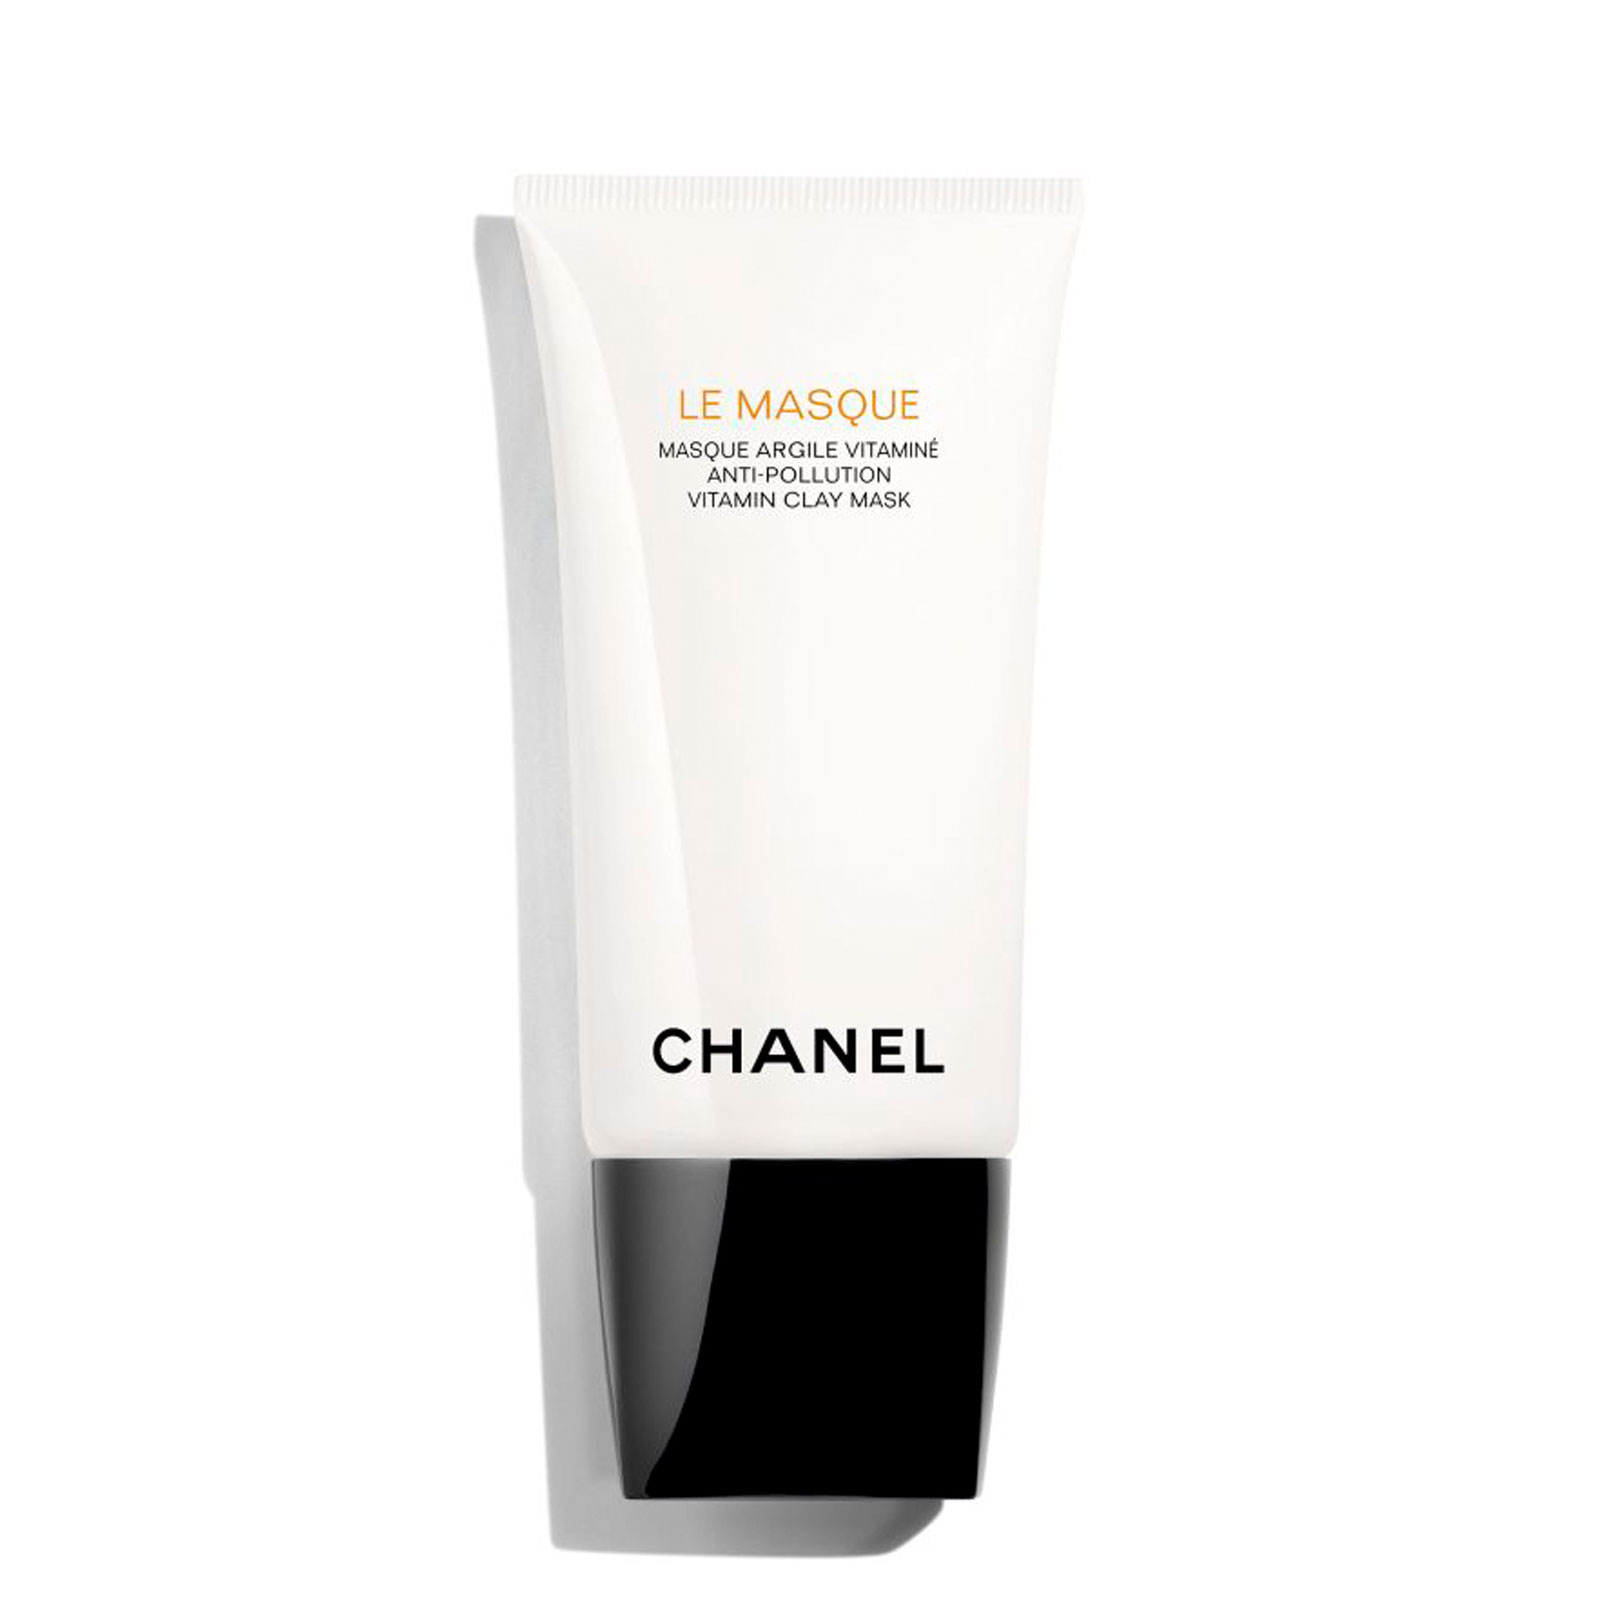 Chanel Le Masque Anti-Pollution Vitamin Clay Mask 75Ml